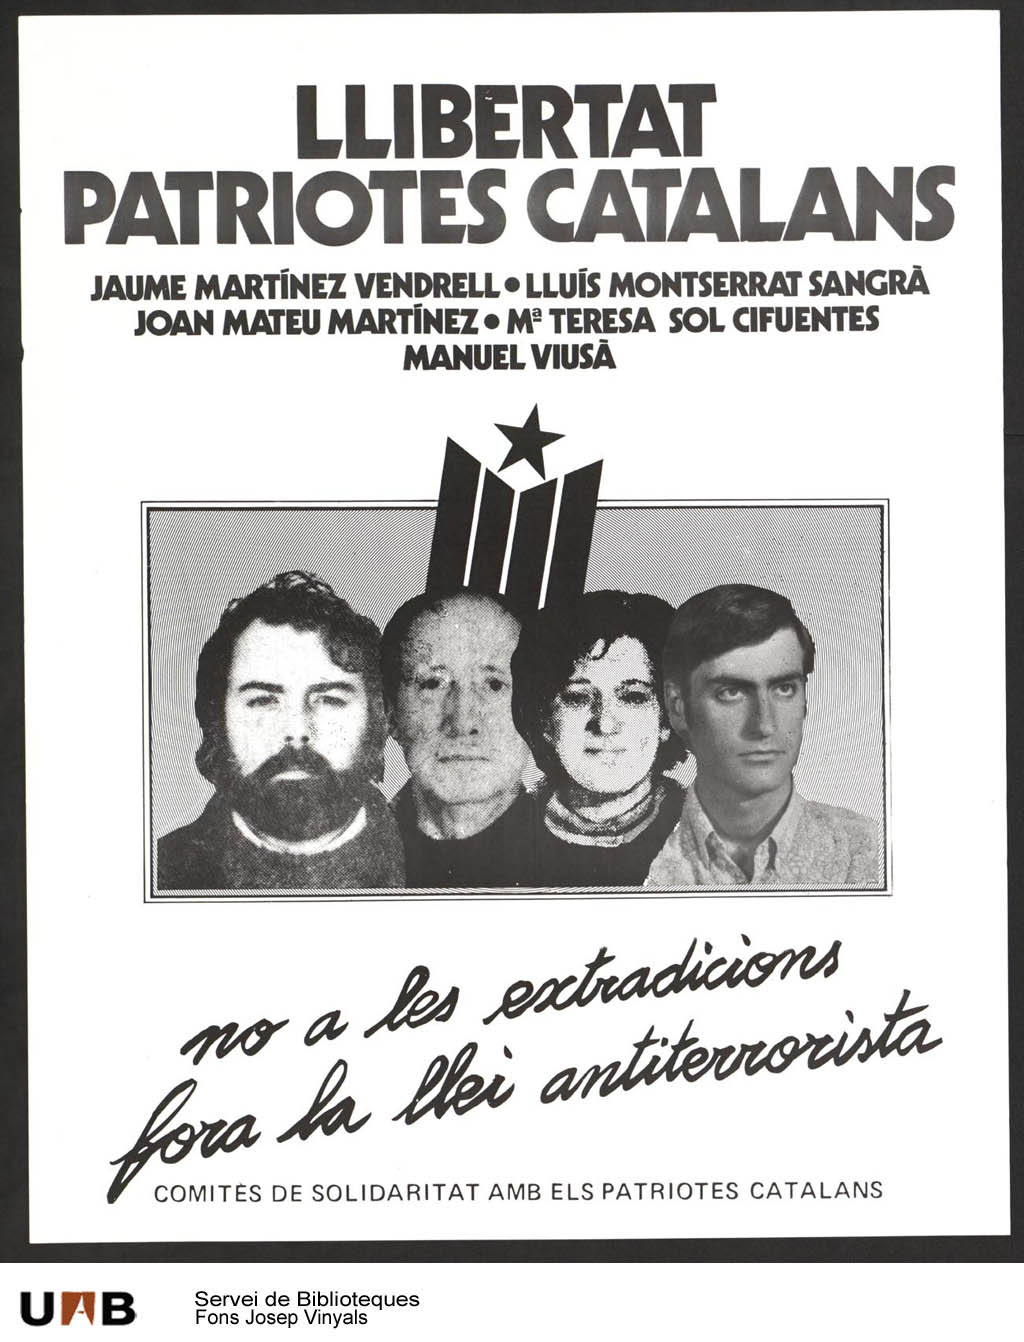 Cartell editat pels Comitès de Solidaritat amb els Patriotes Catalans (CSPC). Font: Fons Josep Vinyes. UAB.